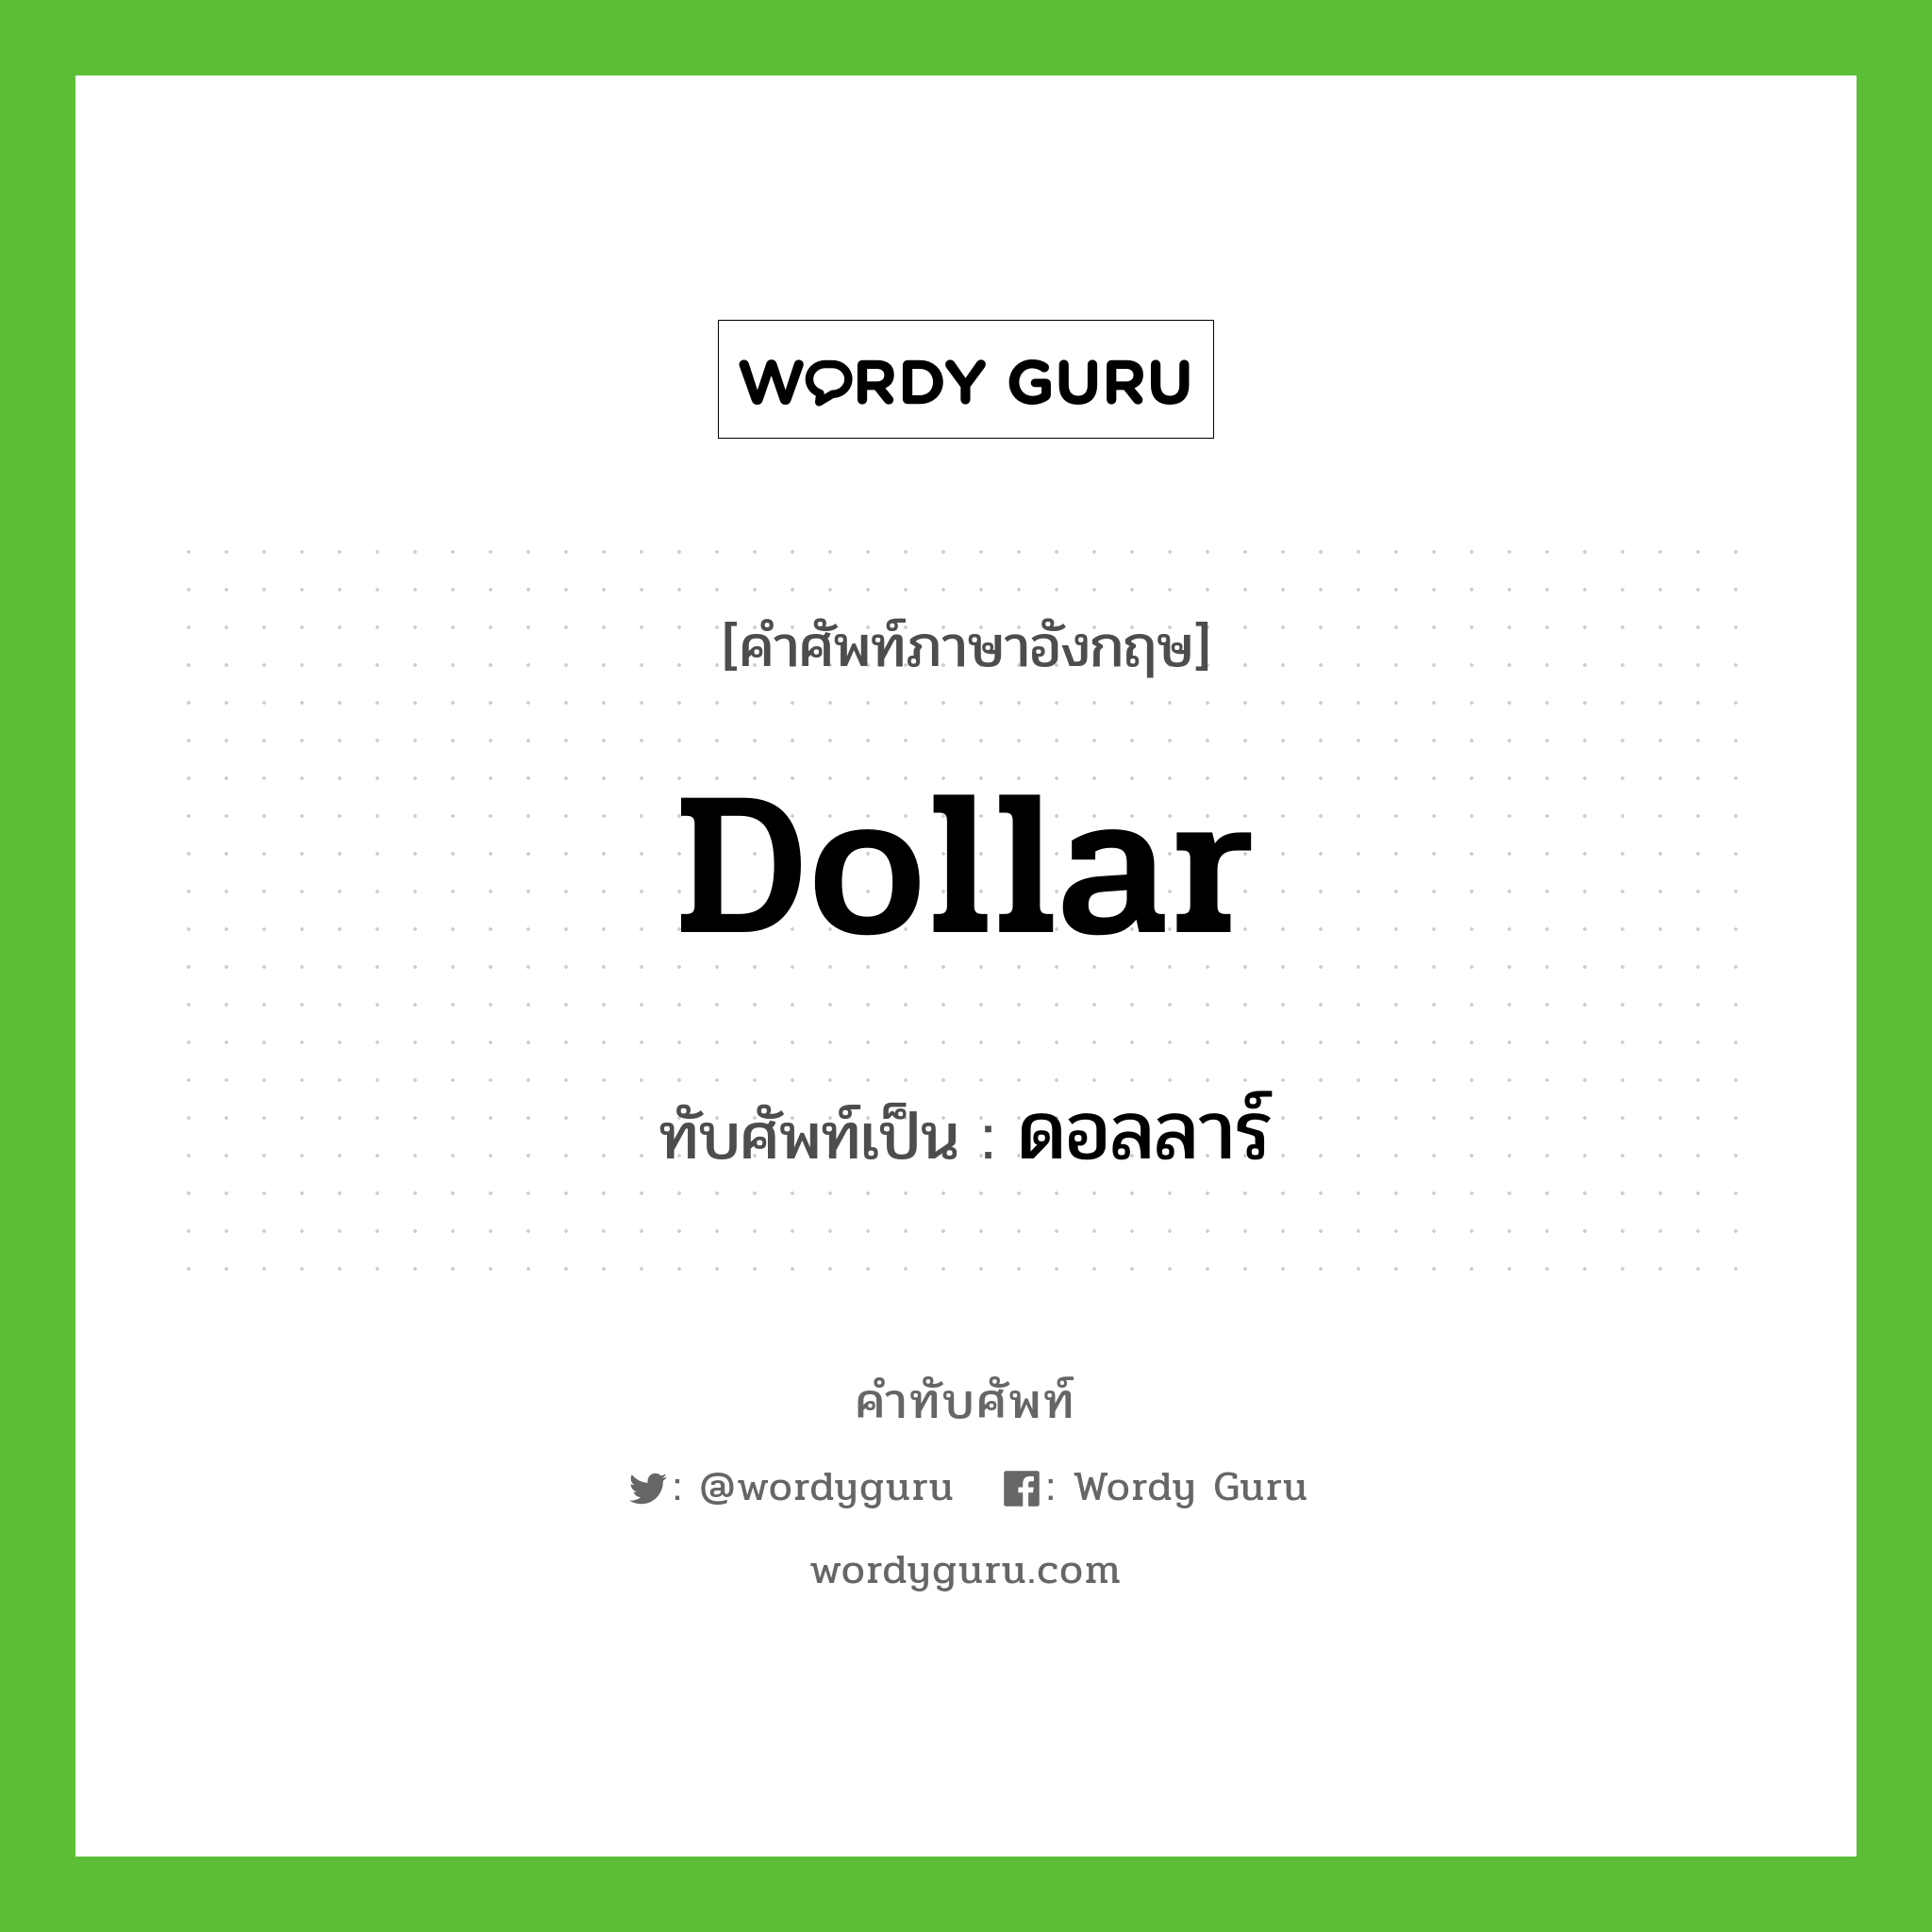 ดอลลาร์ เขียนอย่างไร?, คำศัพท์ภาษาอังกฤษ ดอลลาร์ ทับศัพท์เป็น dollar